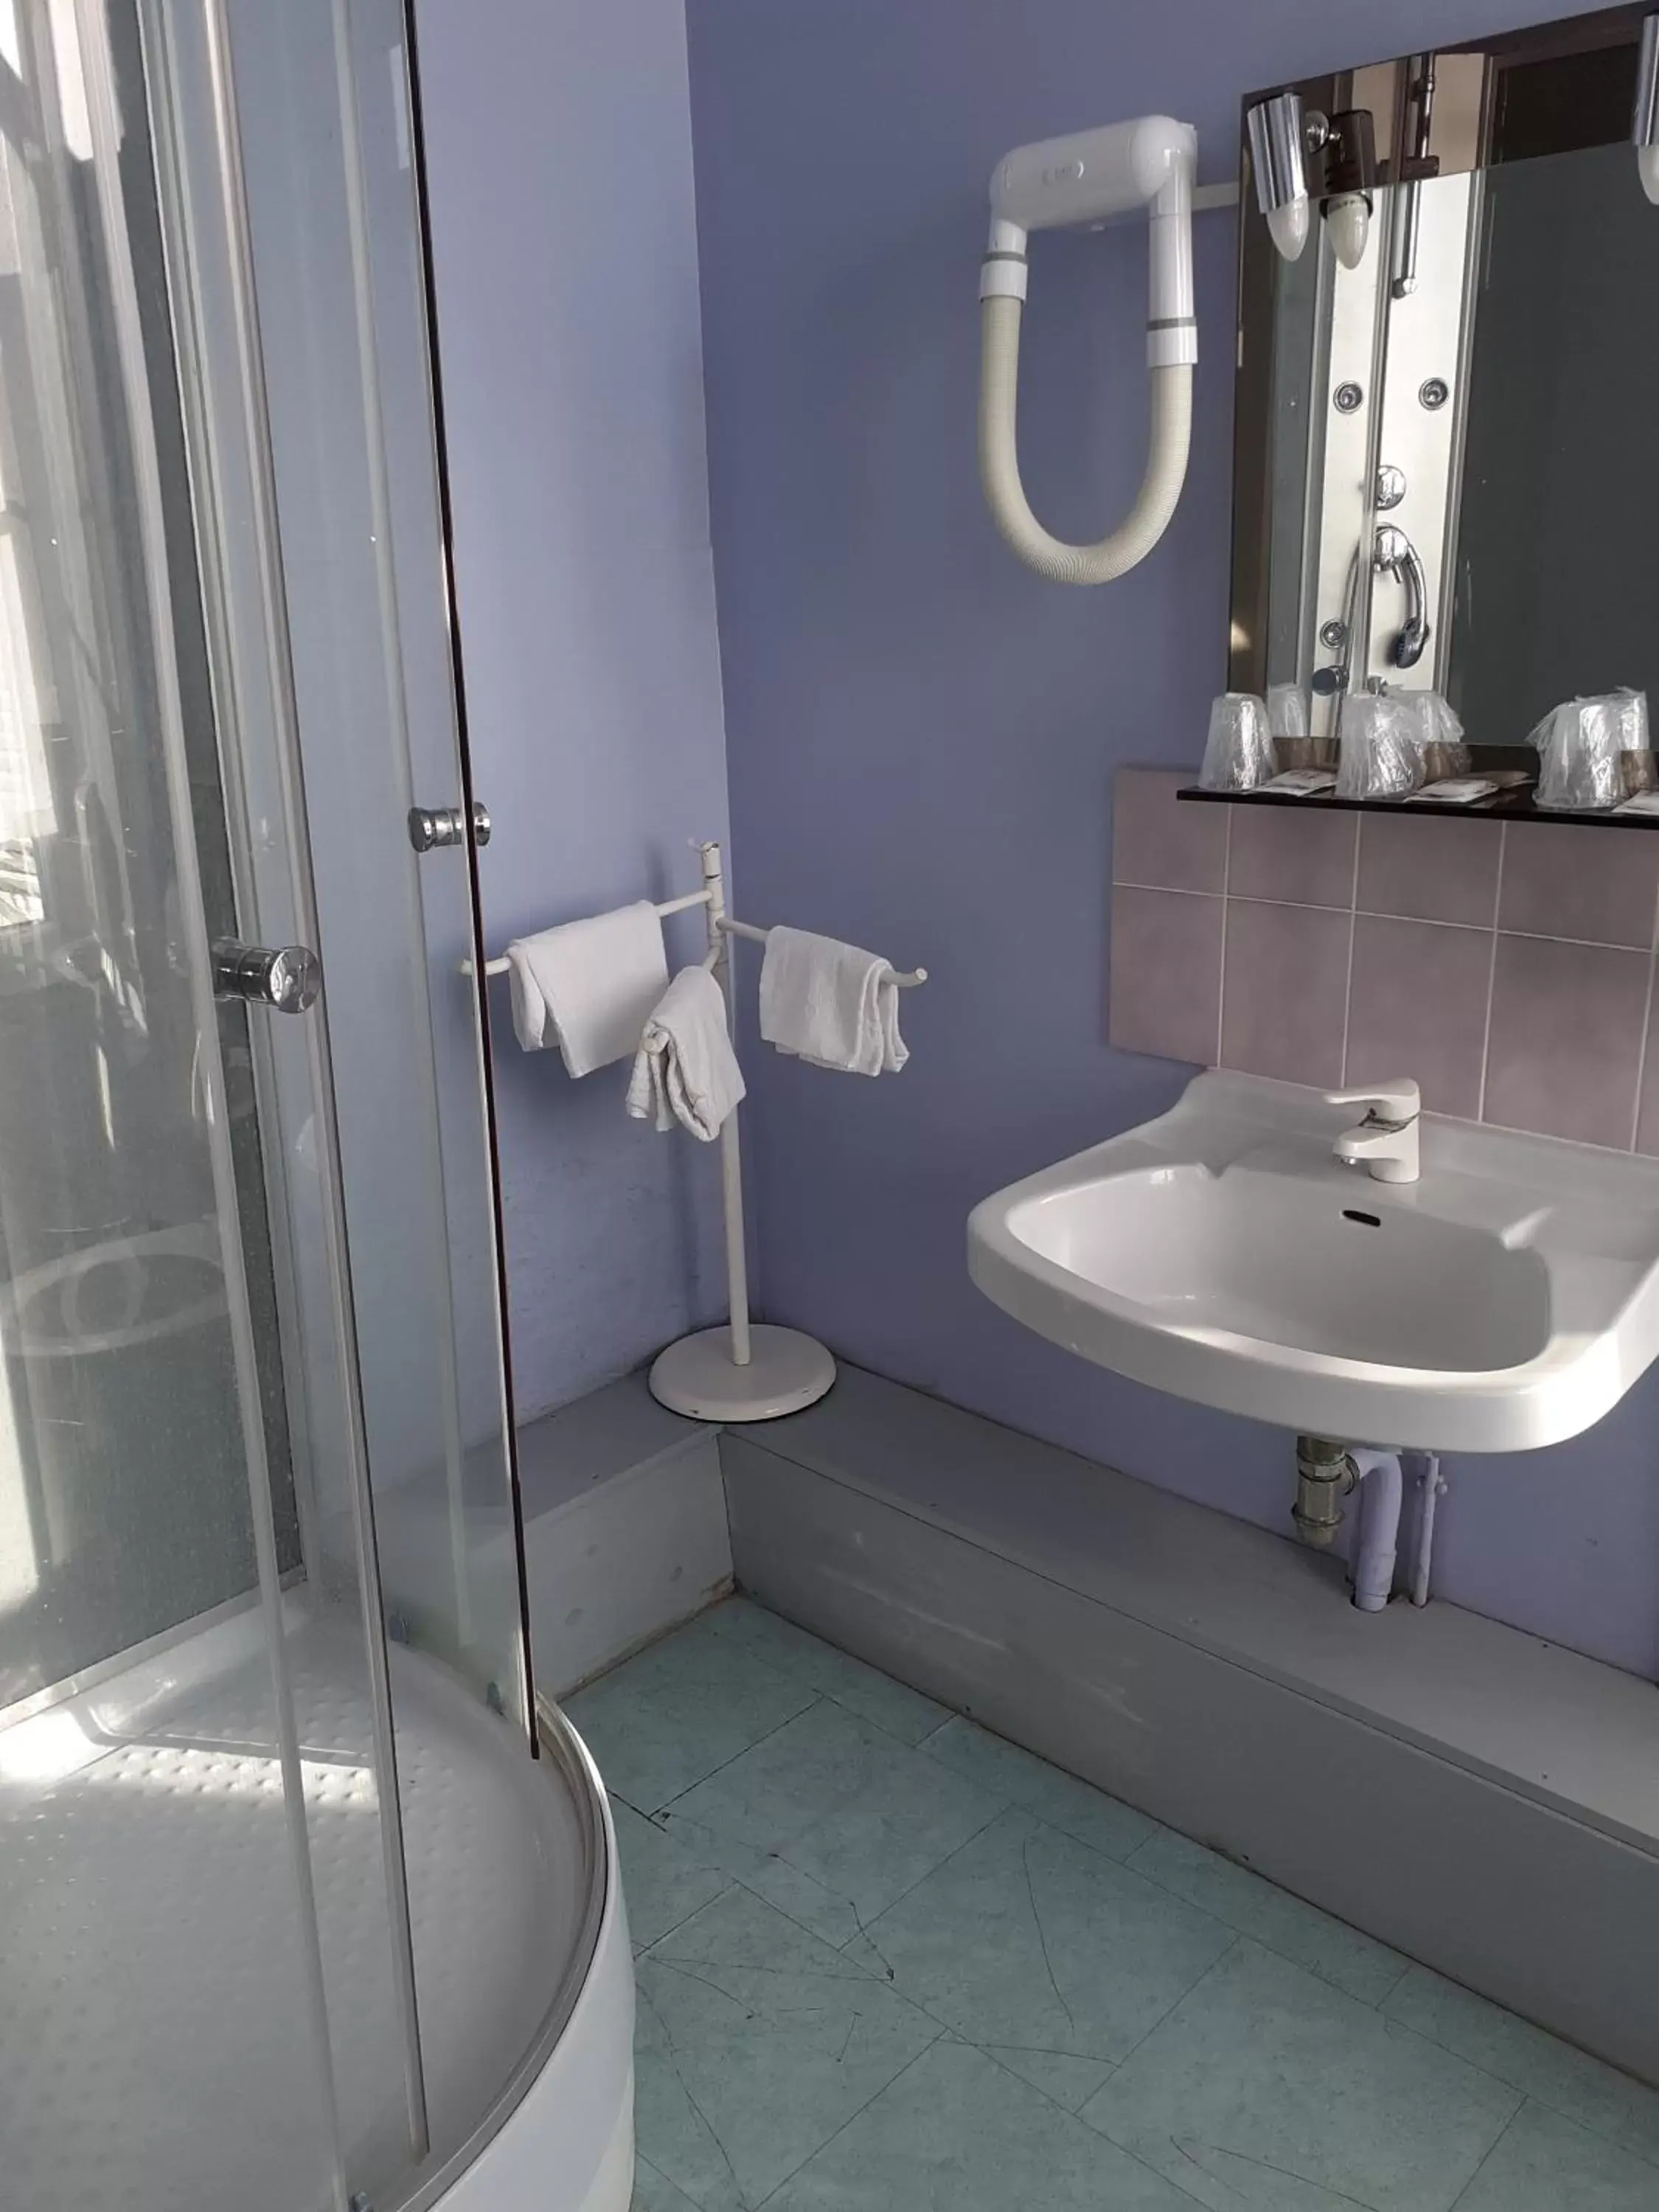 Bathroom in Hotel du chateau blanc